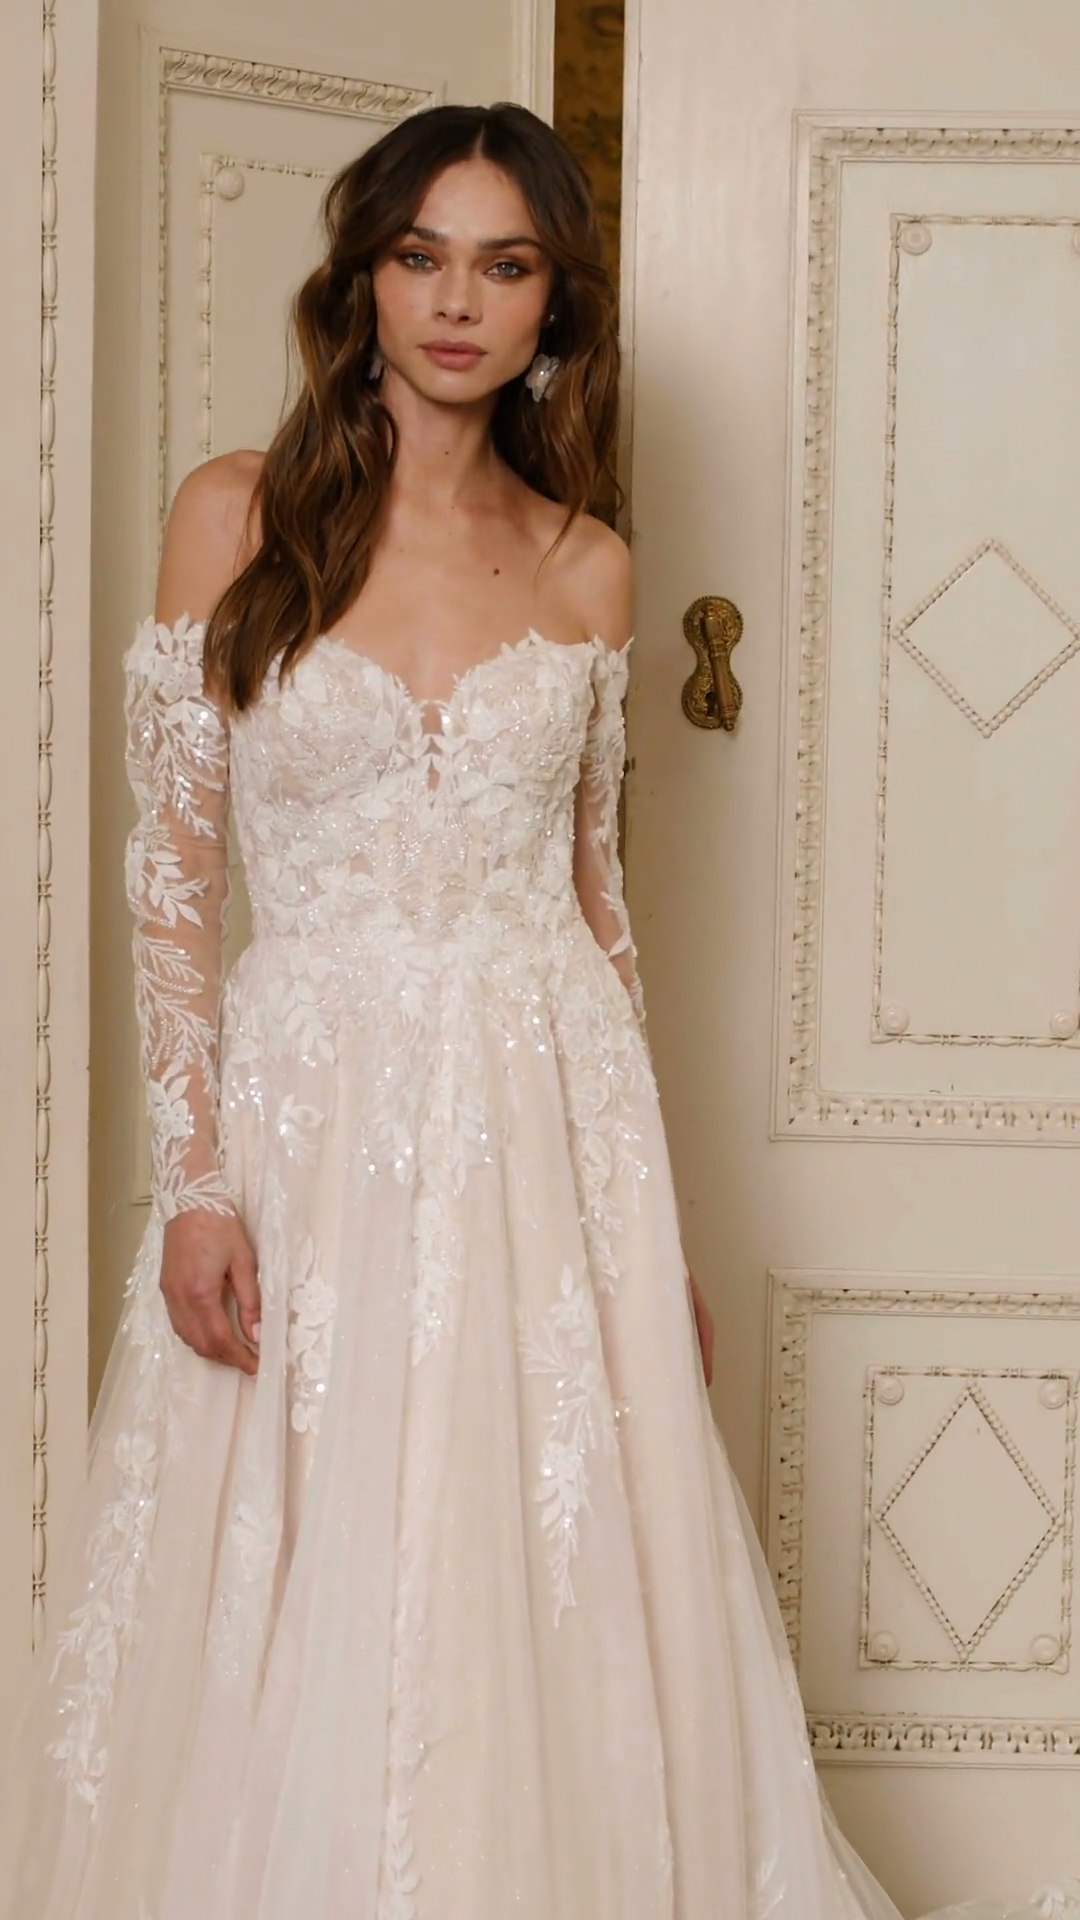 ValStefani PRINCESS couture high quality silk wedding dresses